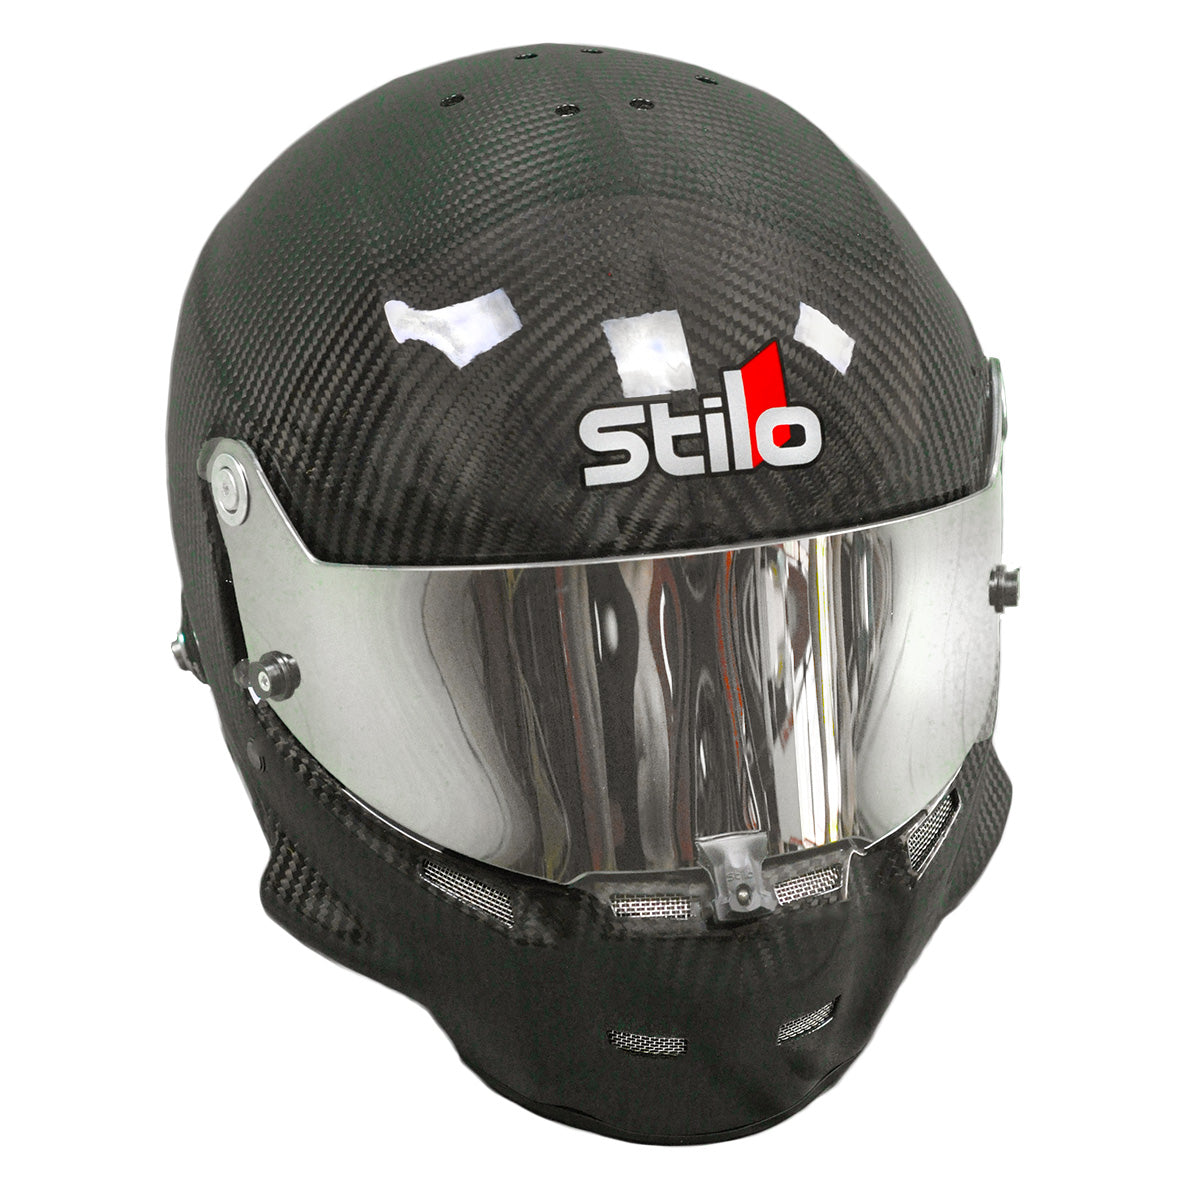 Stilo mirrored ST5 ST5.1 auto racing helmet visor immediate shipping from Thunderhill.